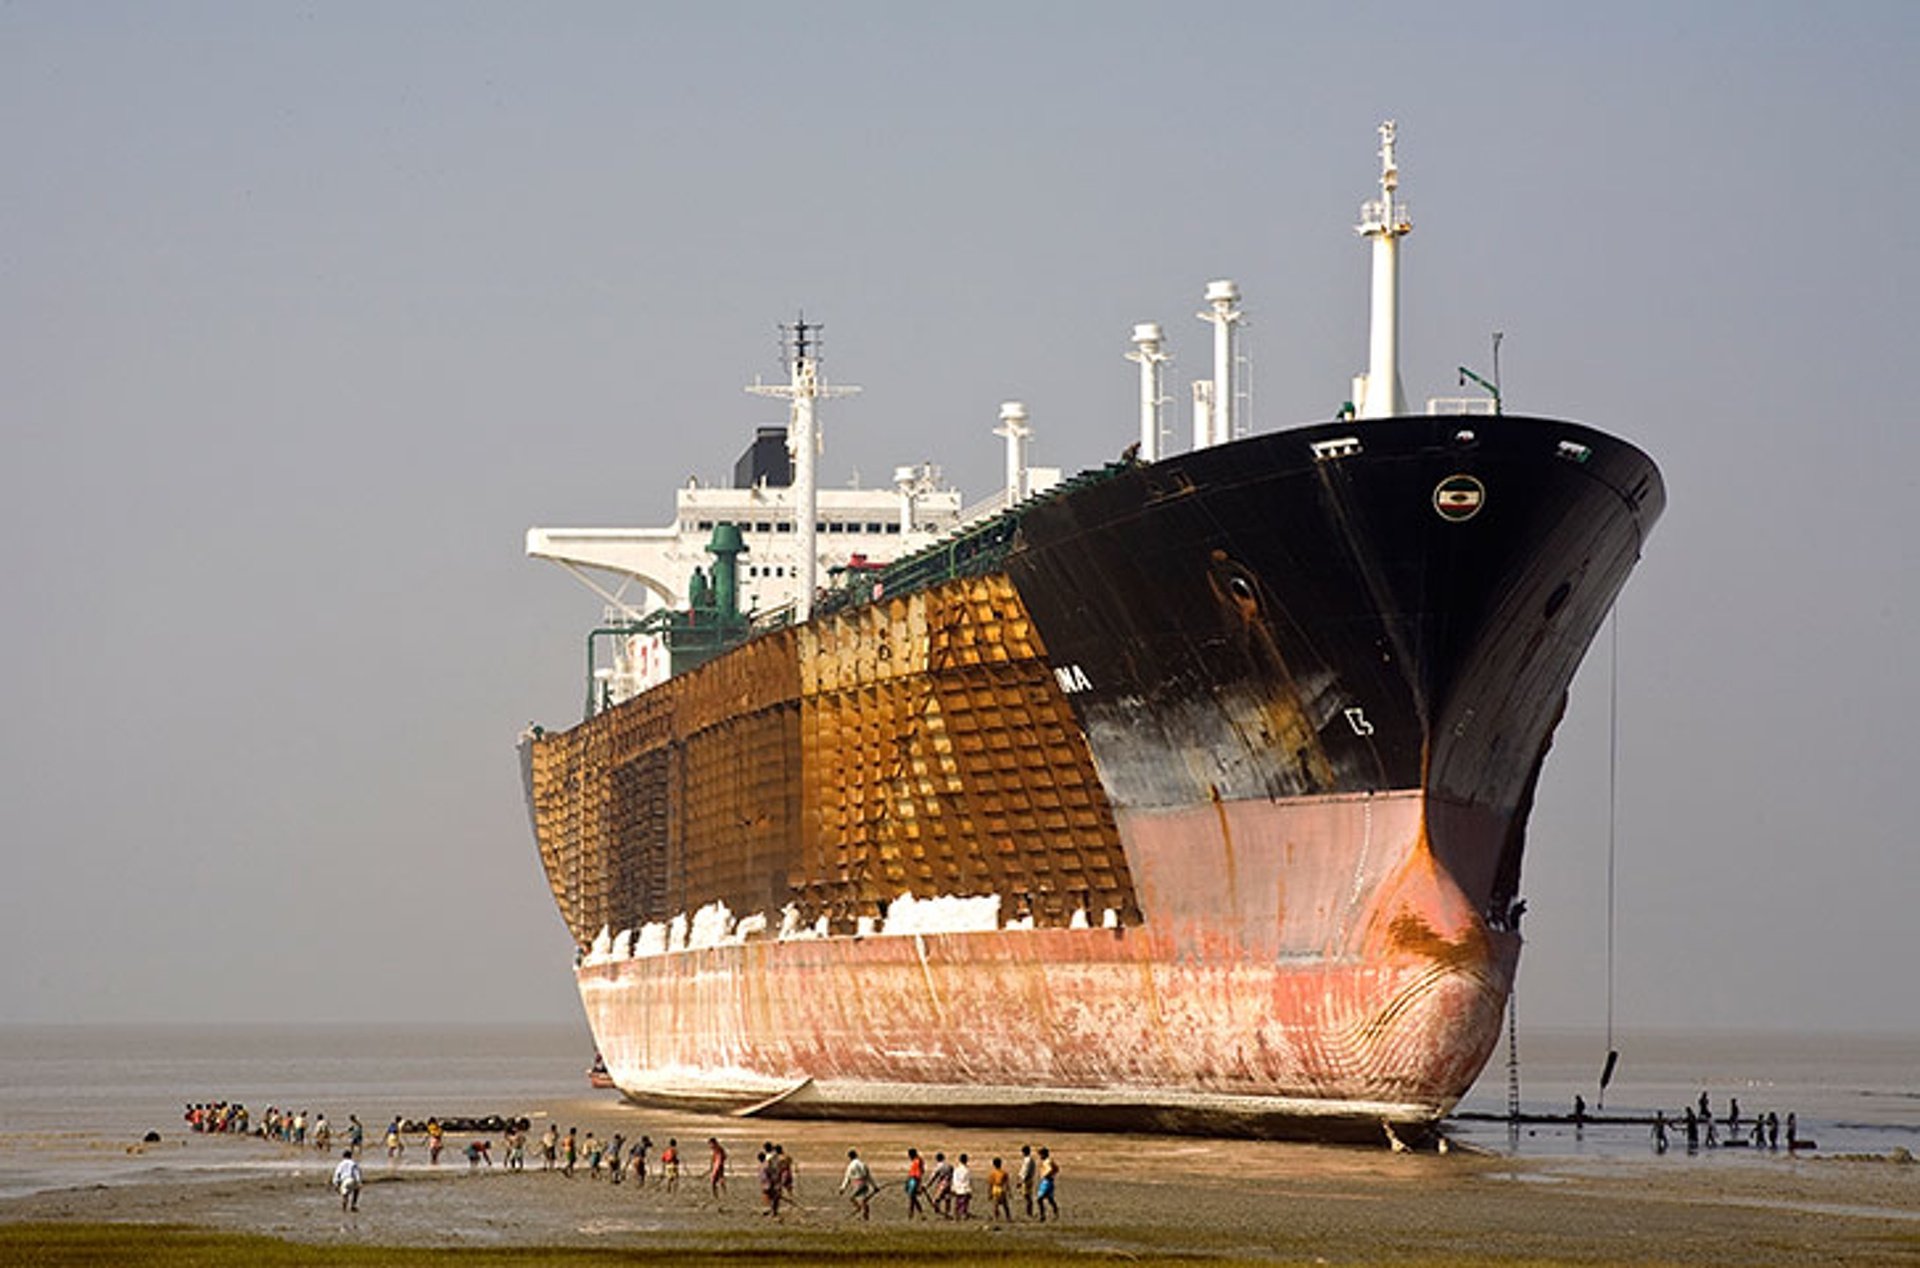 Огромные пароходы. Читтагонг Бангладеш кладбище кораблей. Читтагонг кладбище кораблей. Порт Аланг кладбище кораблей. Корабль Bourbon Mistral.